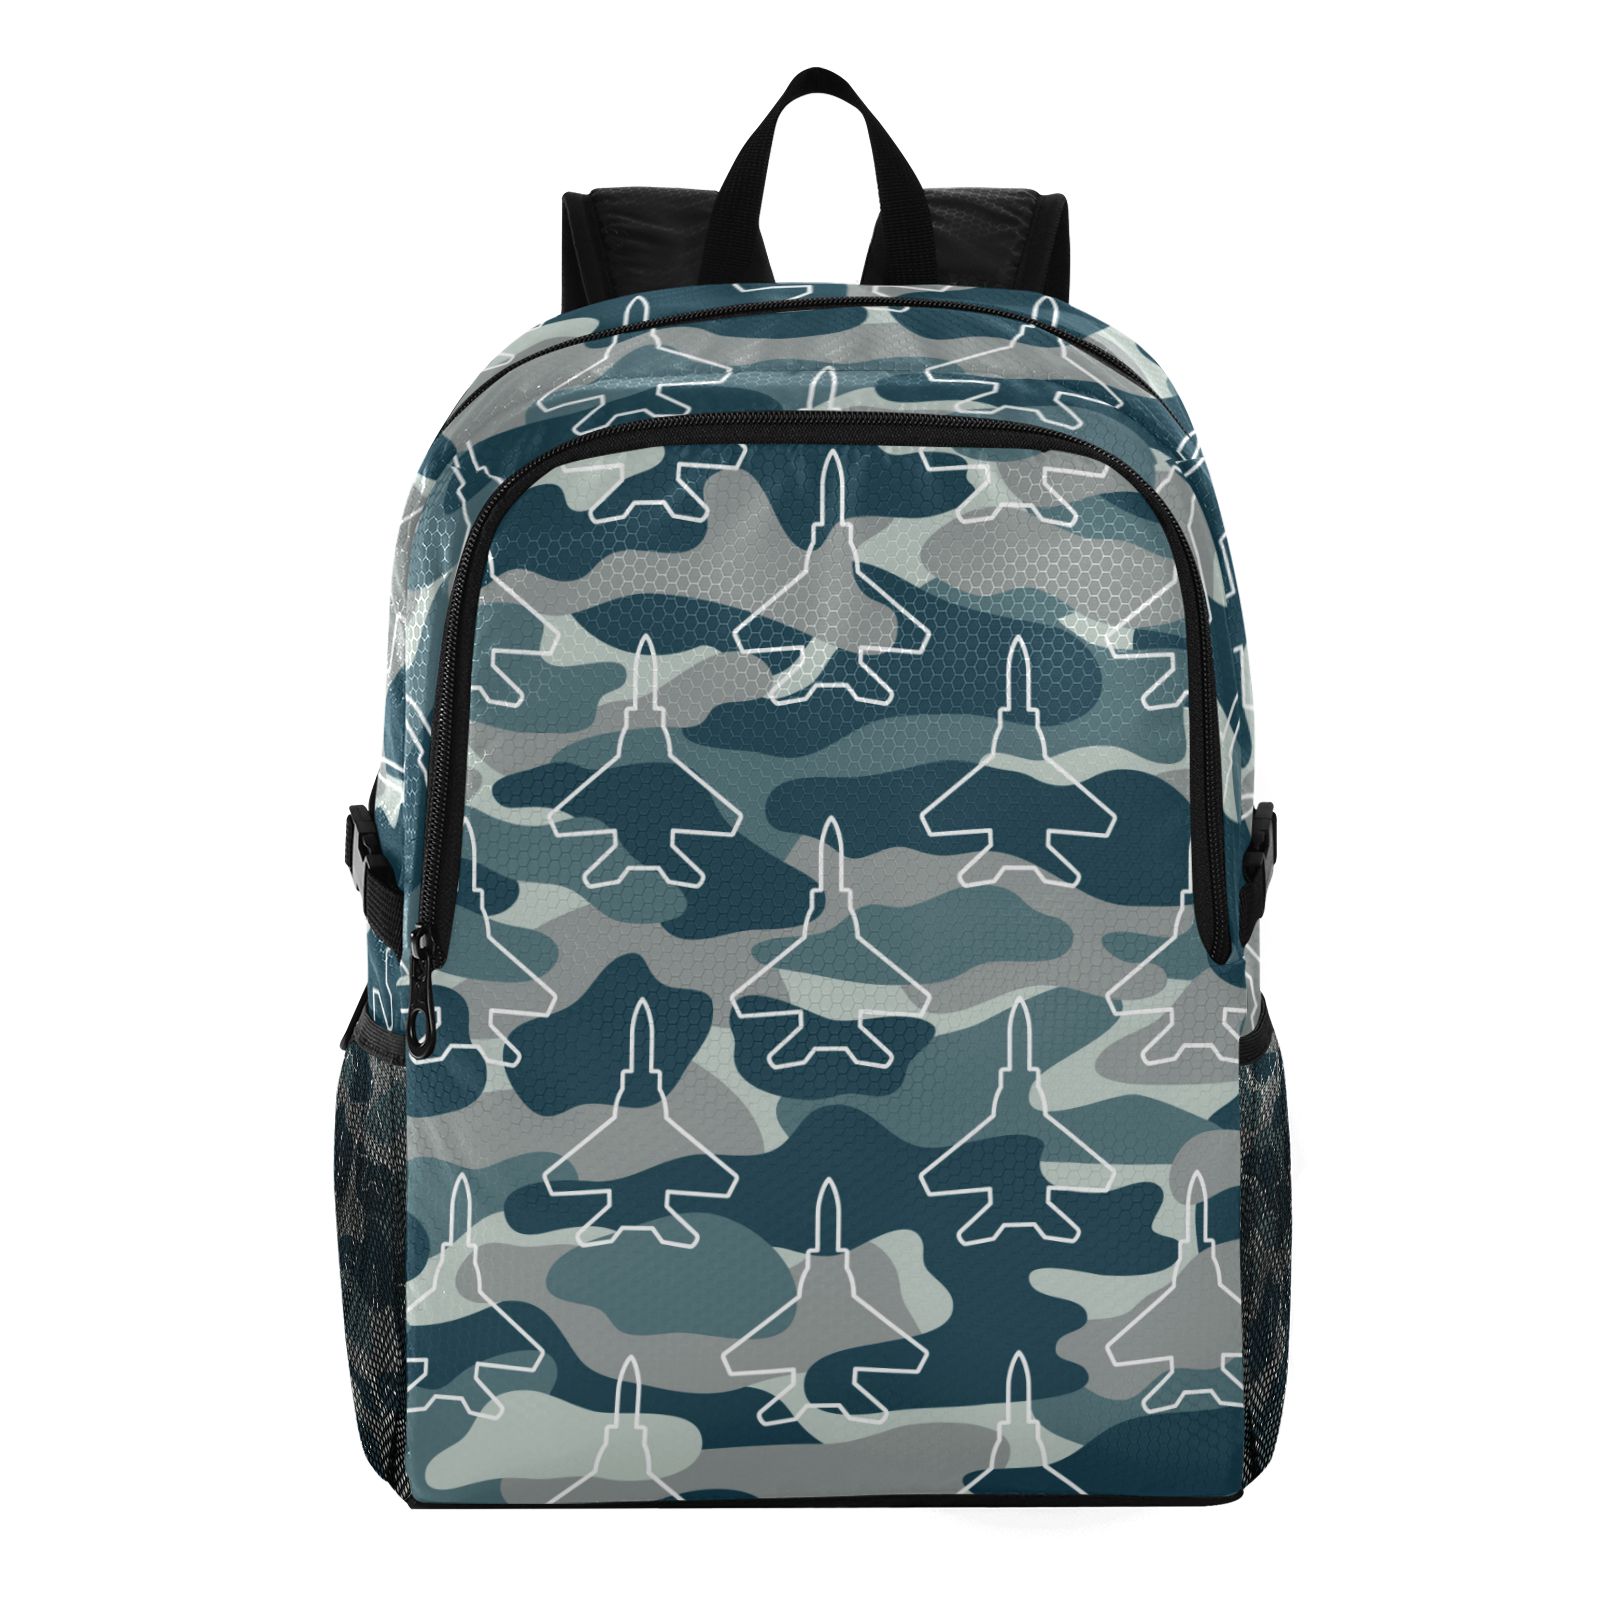  lightweight packable backpack 